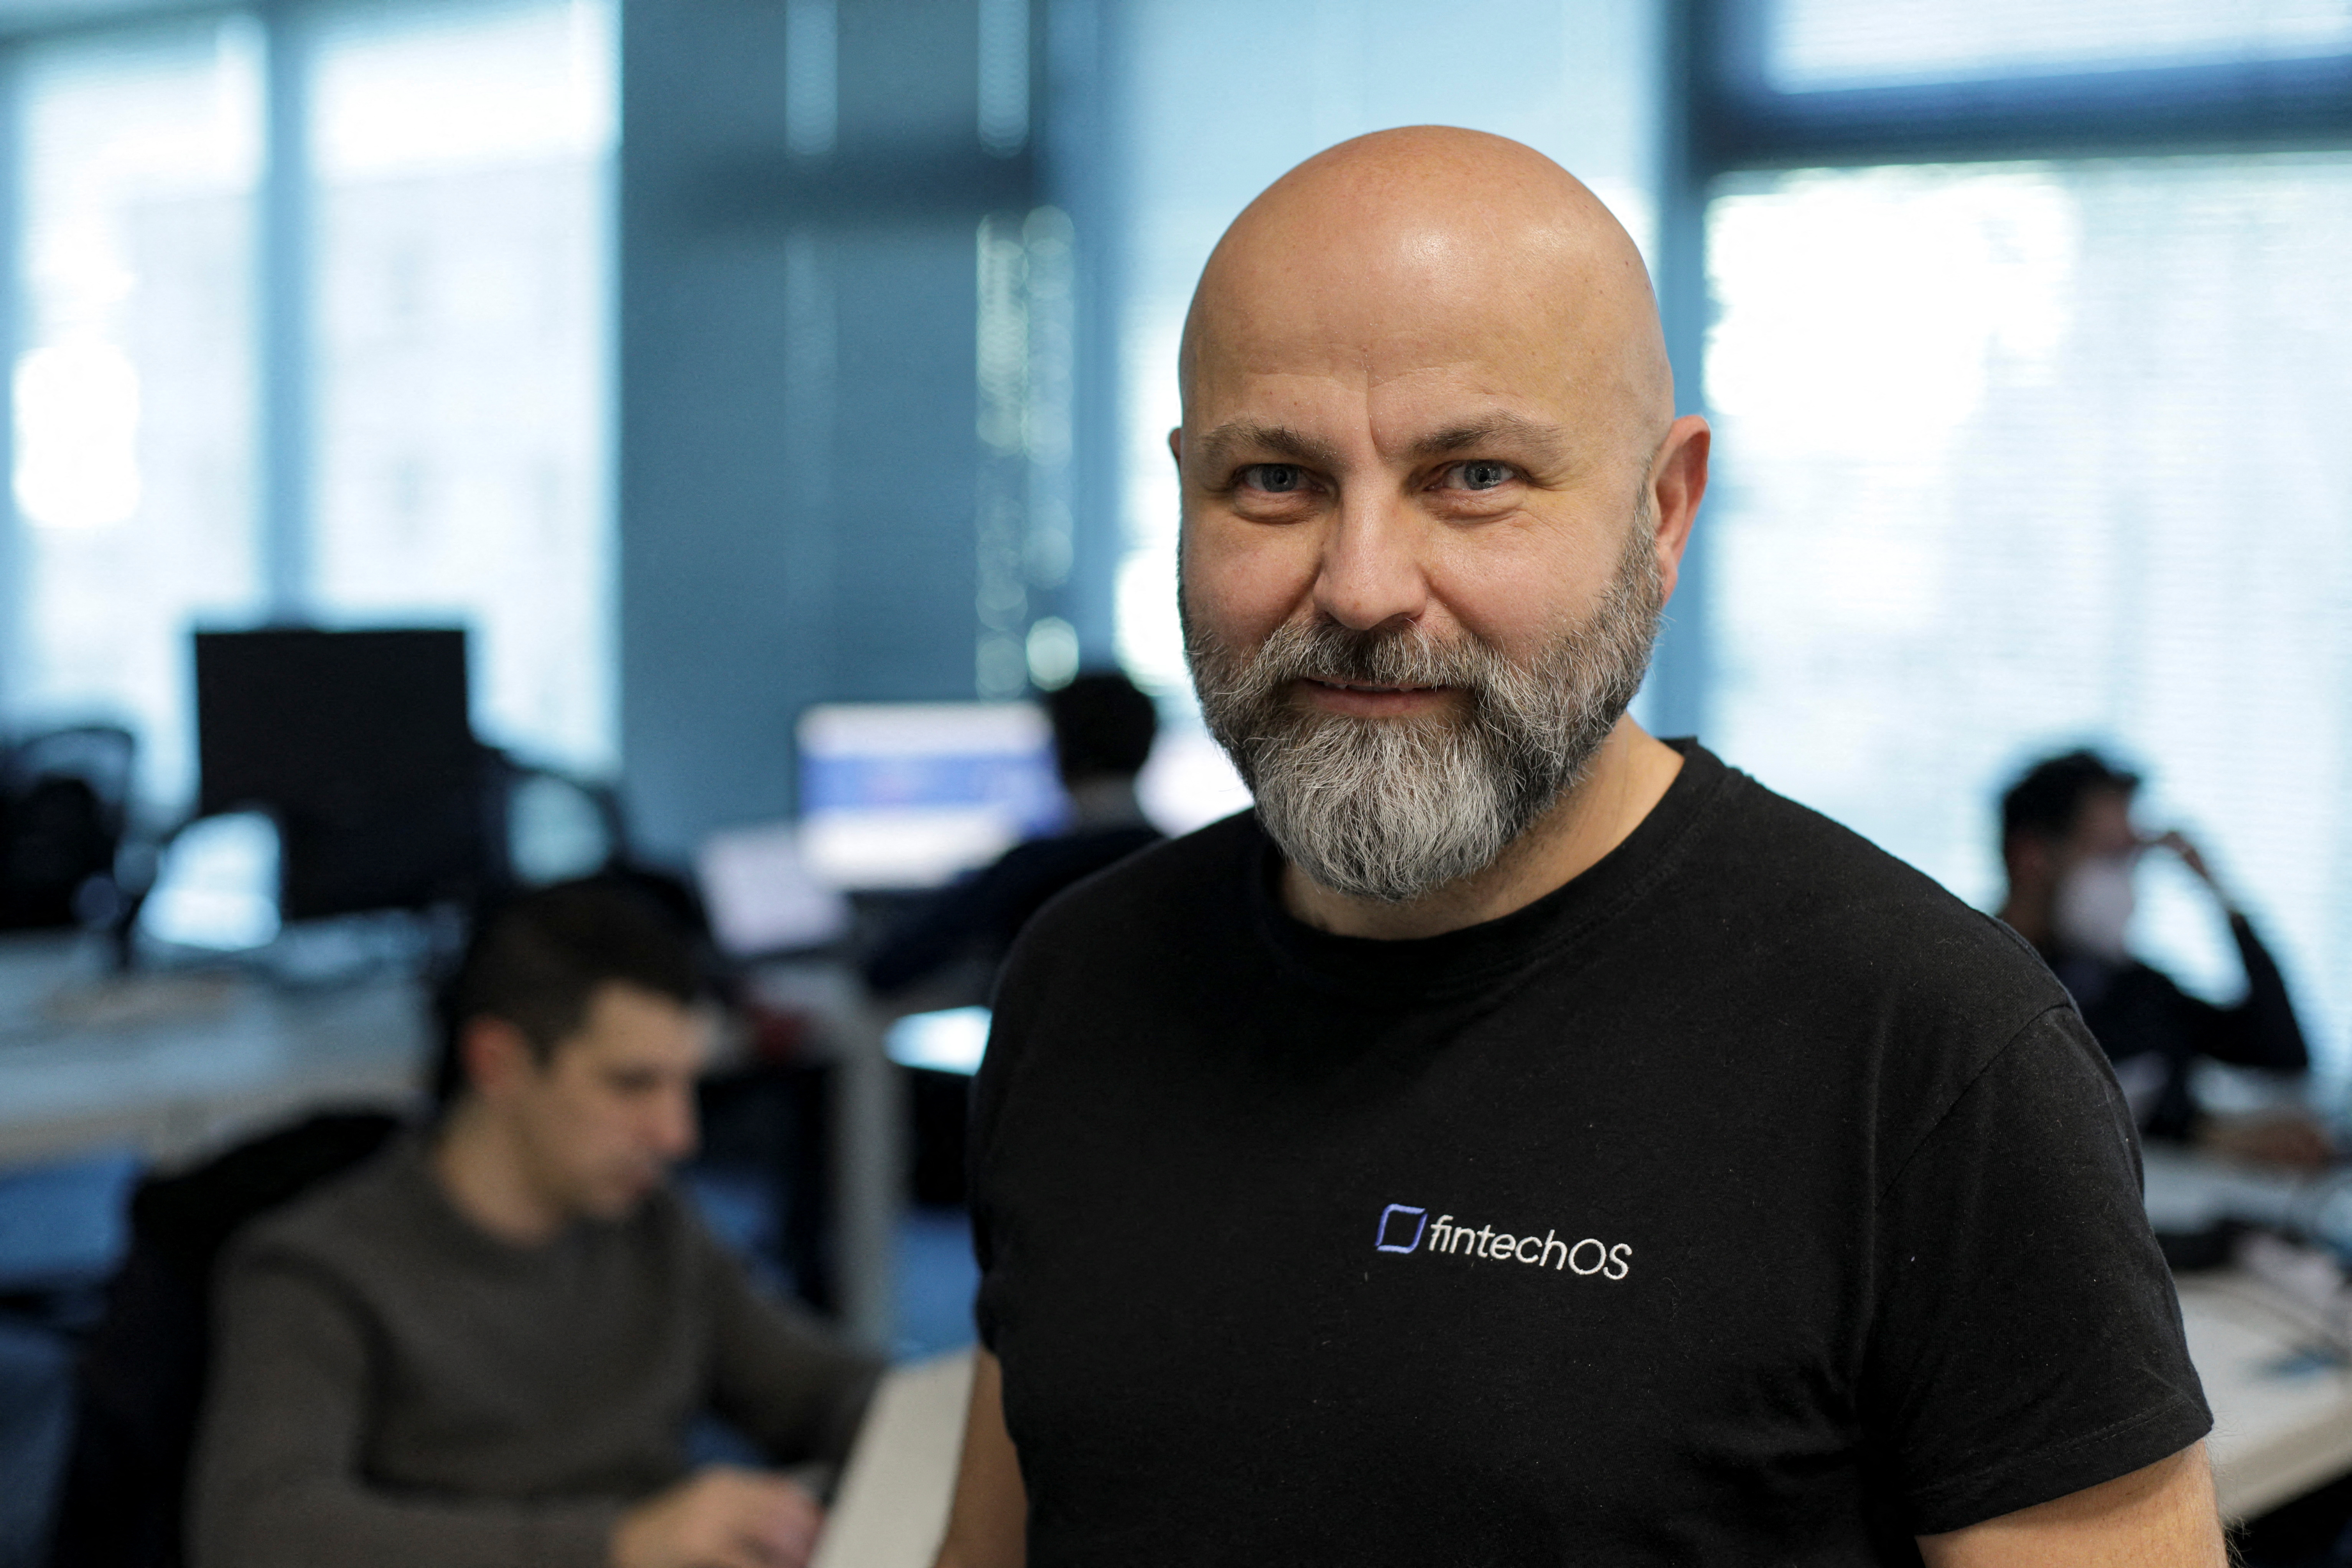 Negut, co-founder of Romanian start-up FintechOS